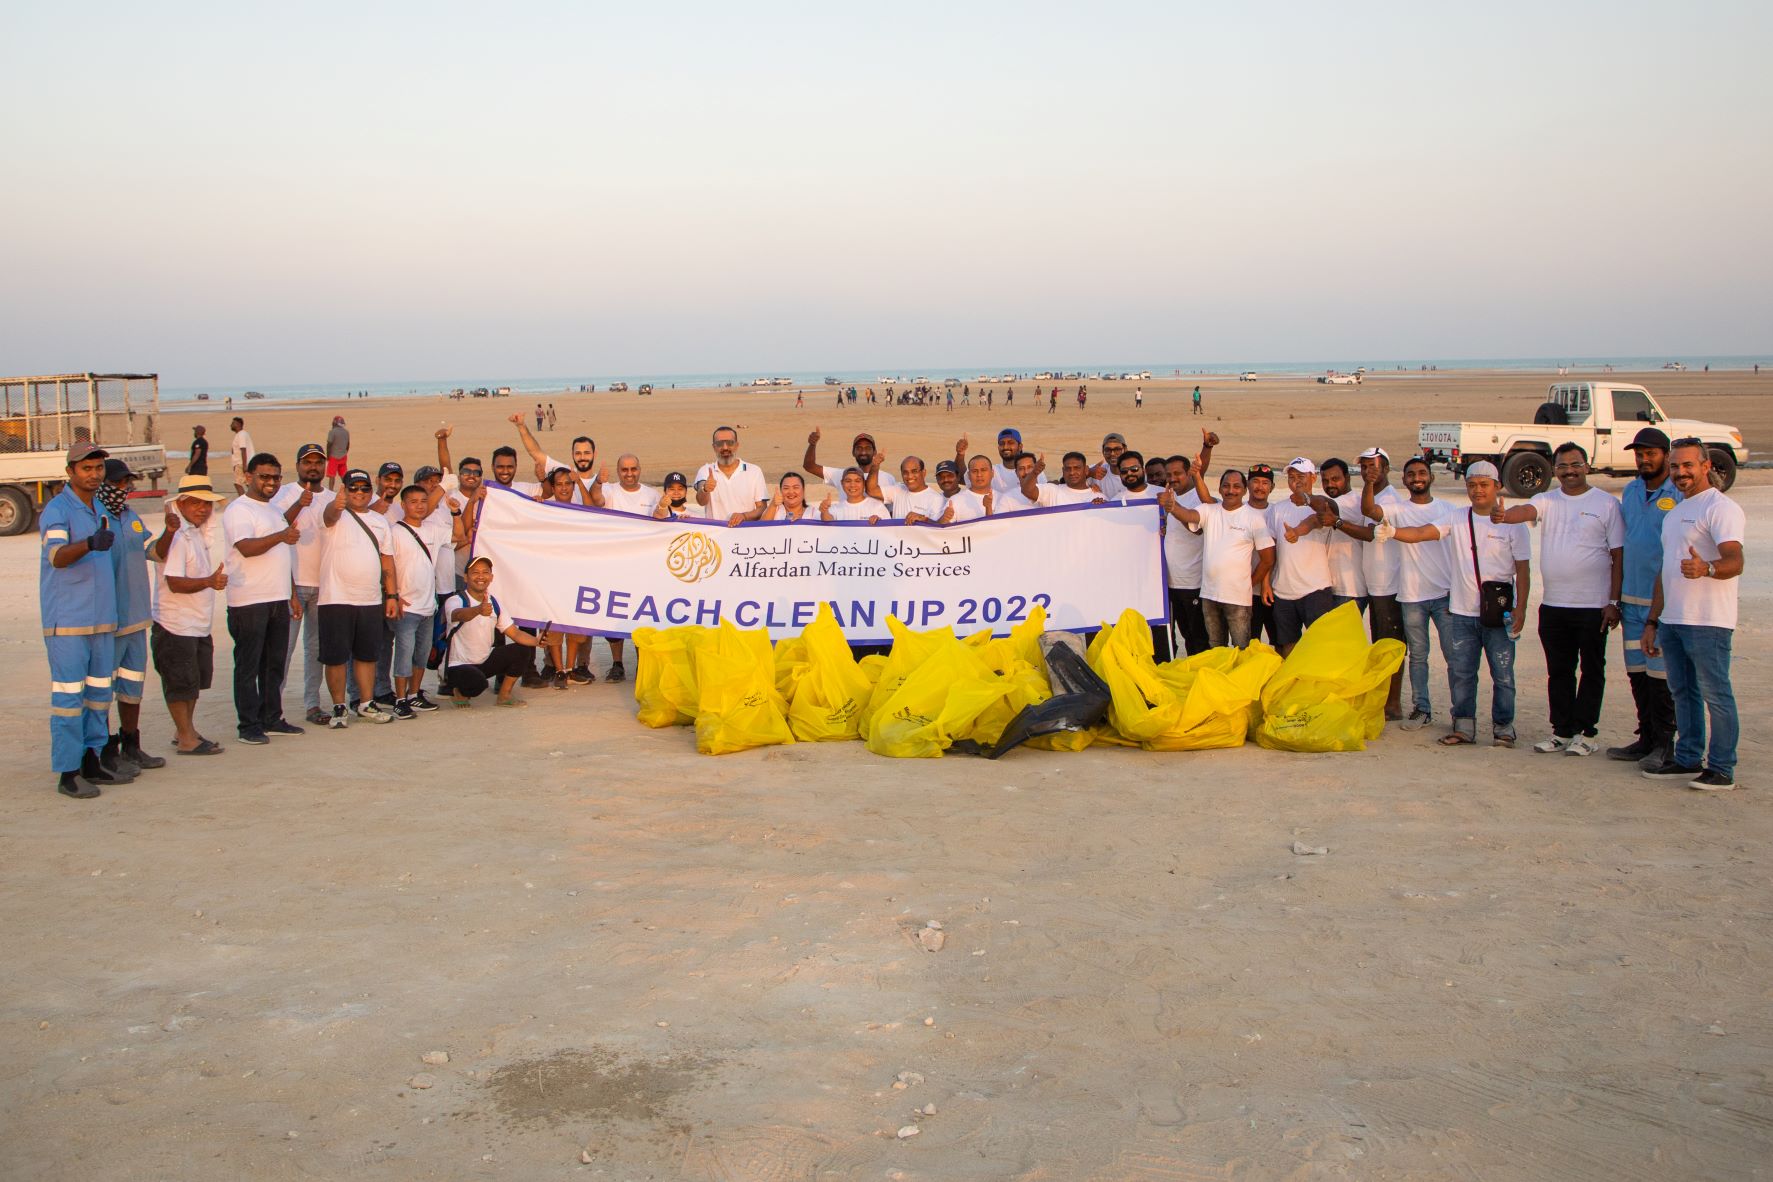 Beach Cleanup 2022 - Alfardan Marine